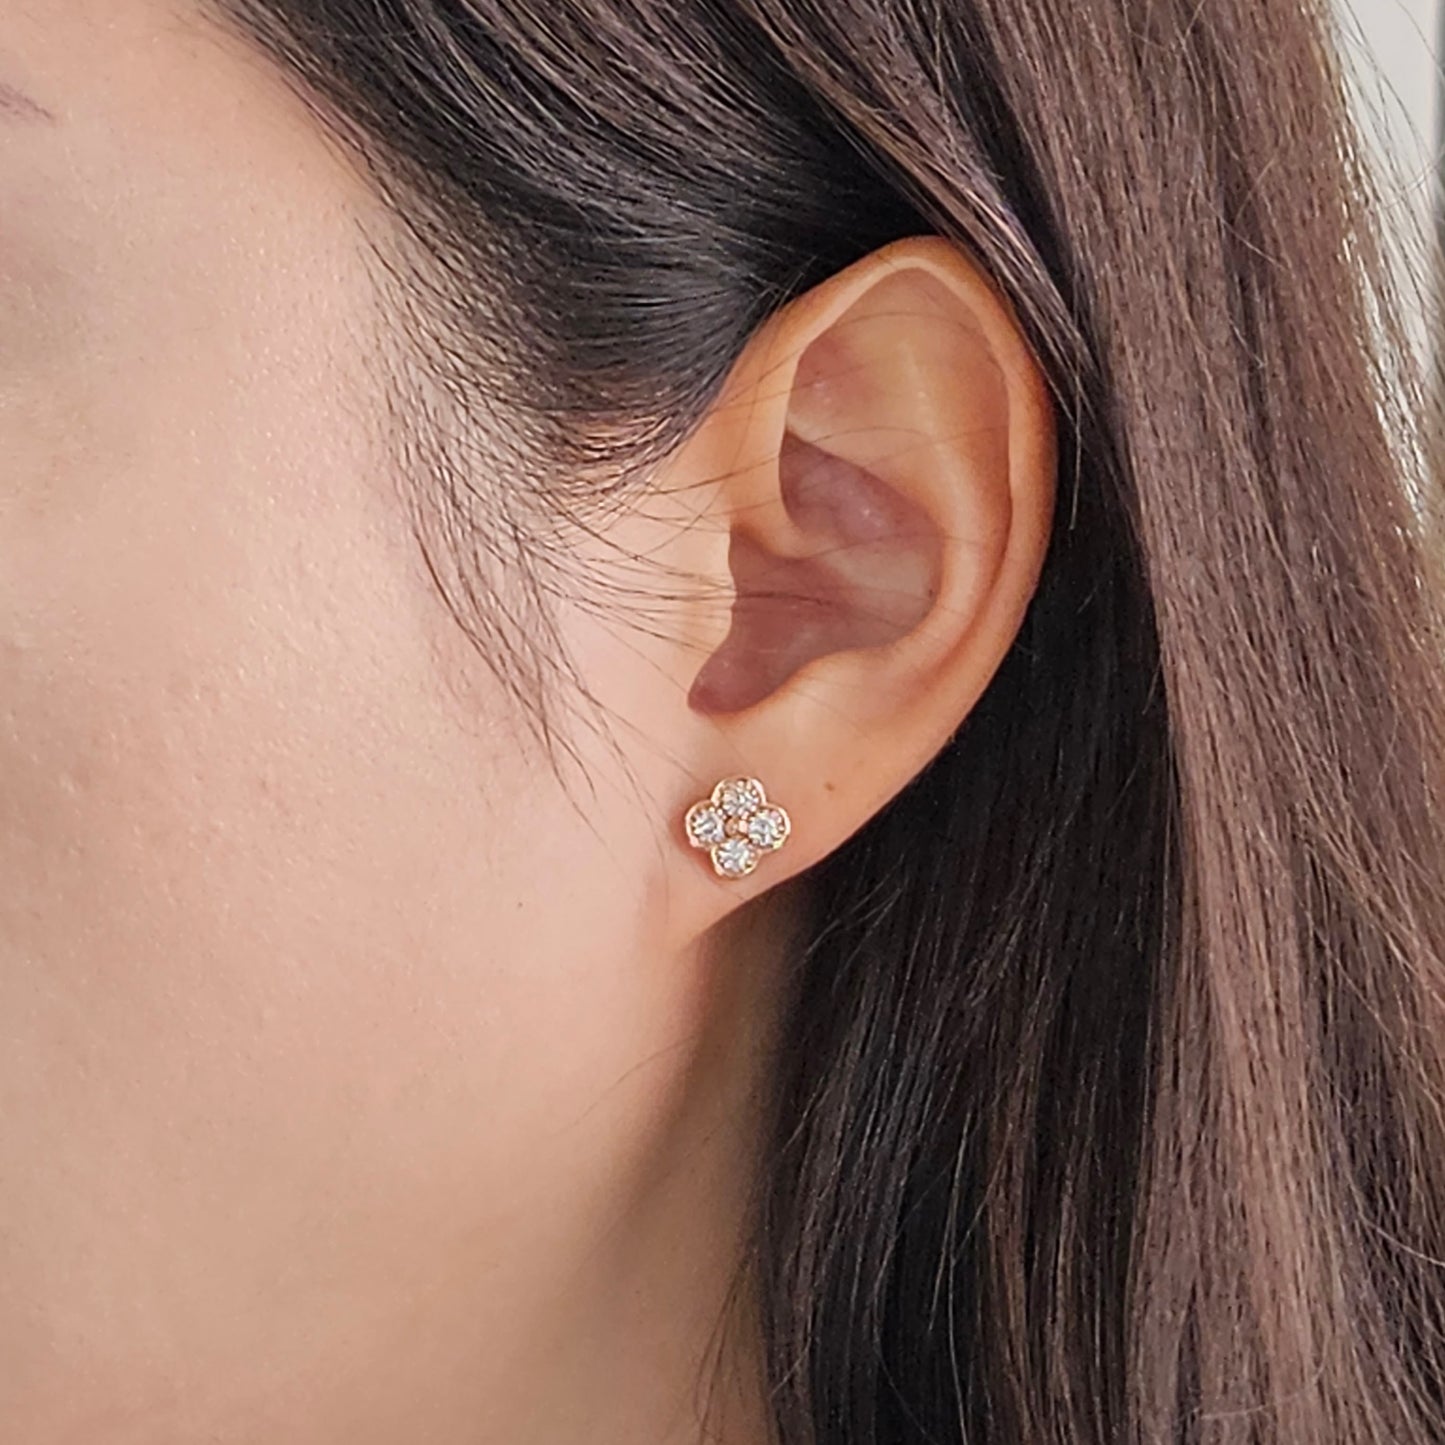 Diamond Clover Earrings/14K,18K gold 9.7mm Clover Classic Dainty Cluster Stud Earrings/Natural Diamond Stud Earring/Anniversary Gift